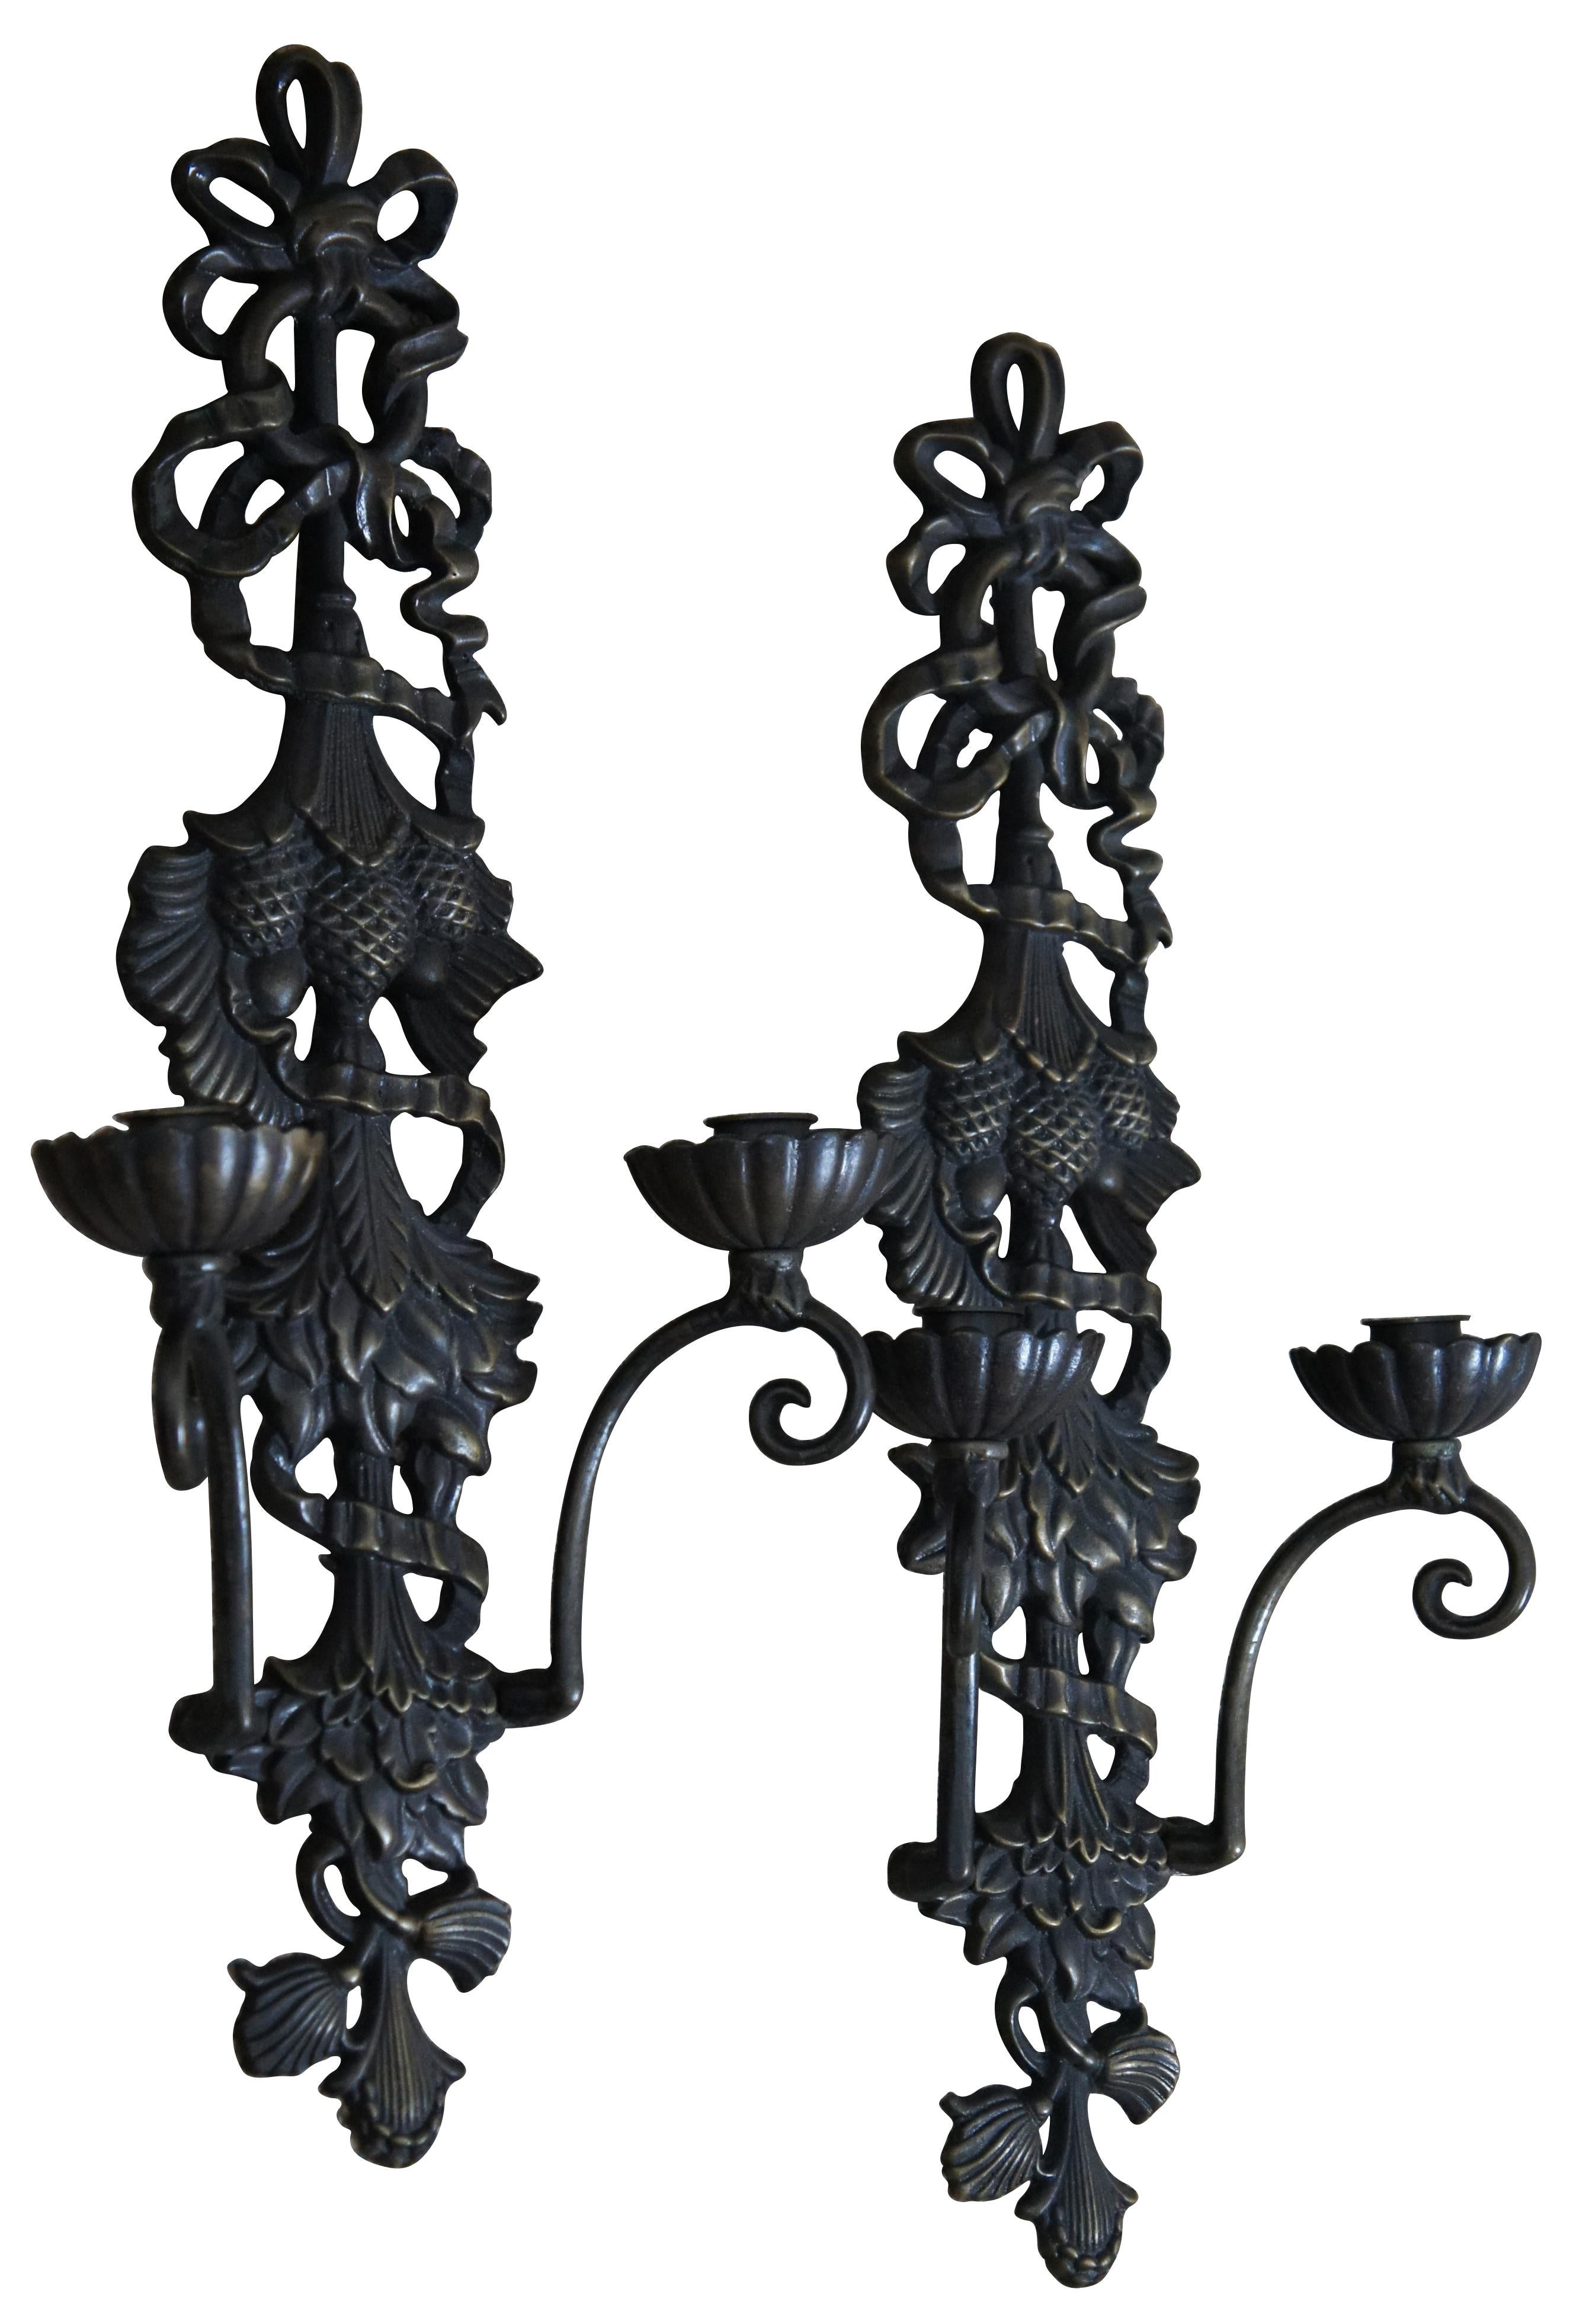 Zwei Kerzenleuchter aus Bronze mit viktorianischem Muster aus Bändern, Blättern und Tannenzapfen.